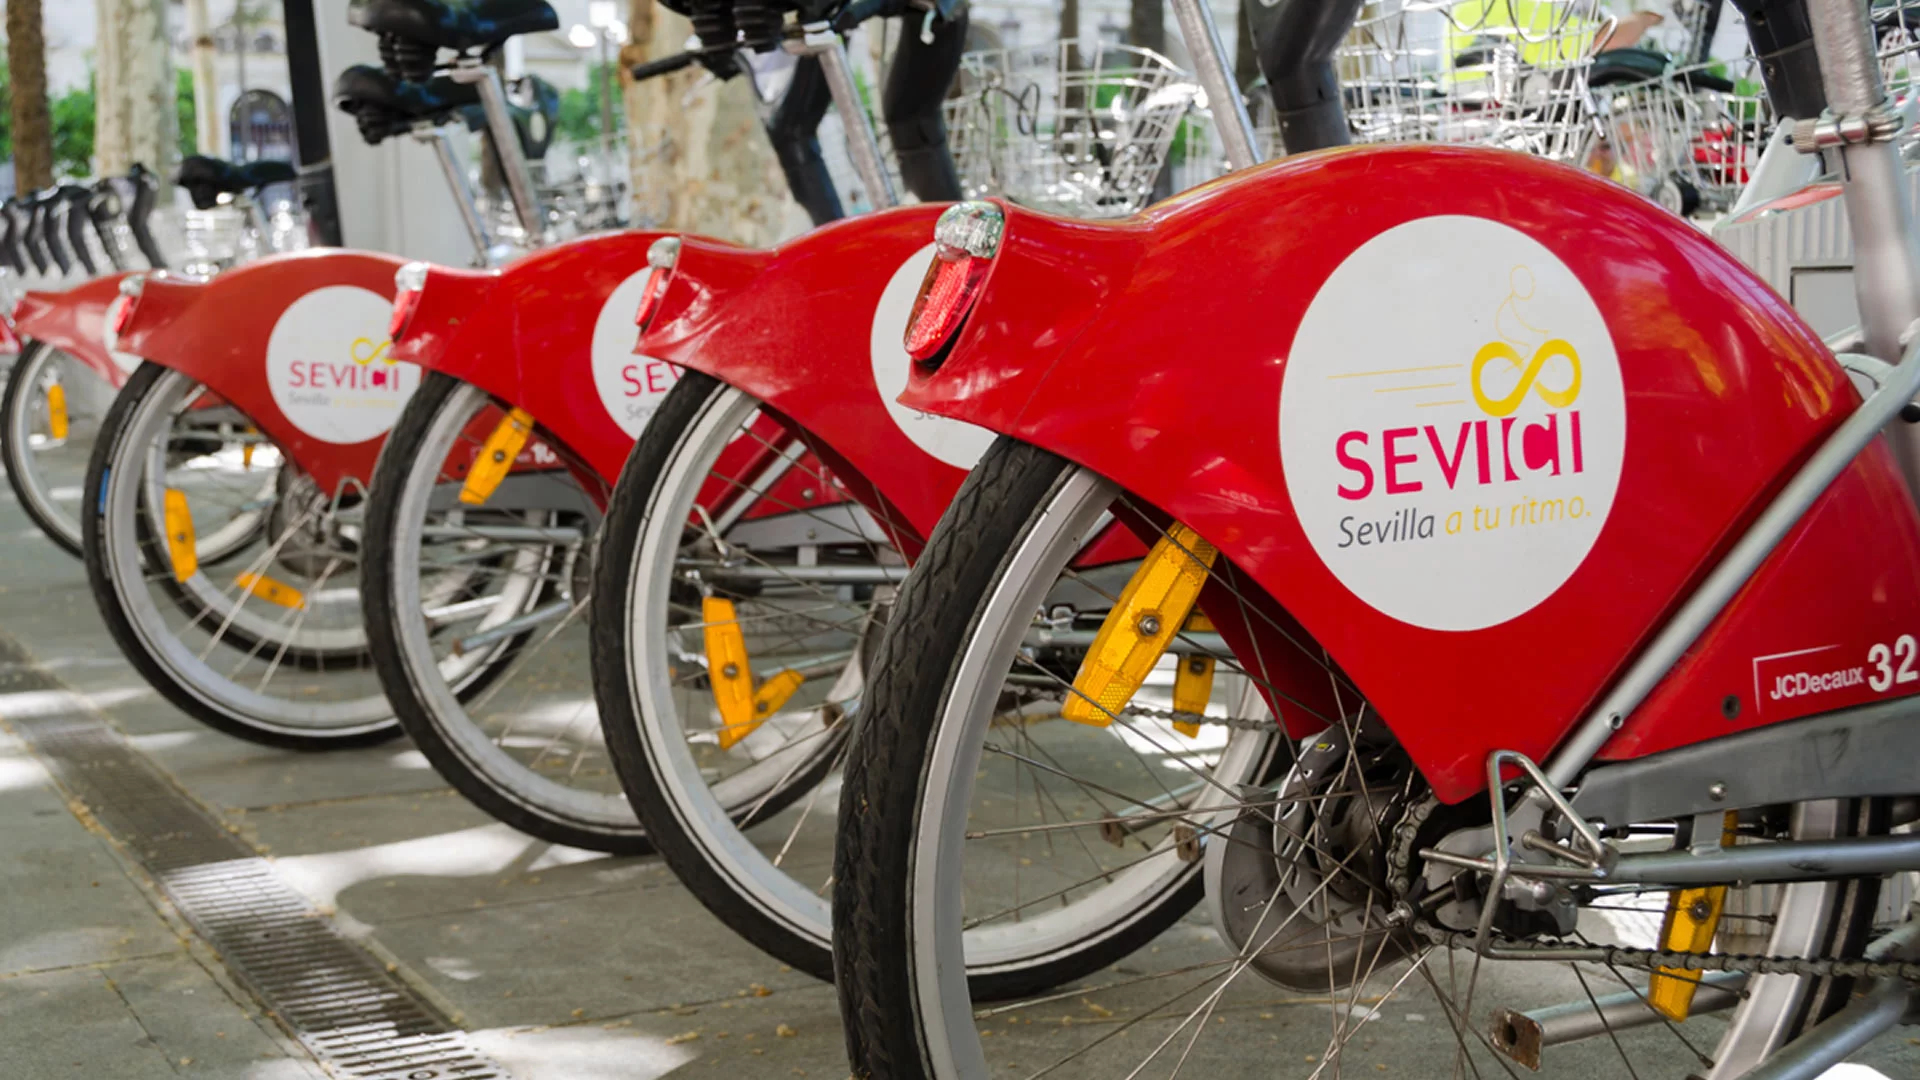 SEVIci, il servizio pubblico di biciclette a Siviglia